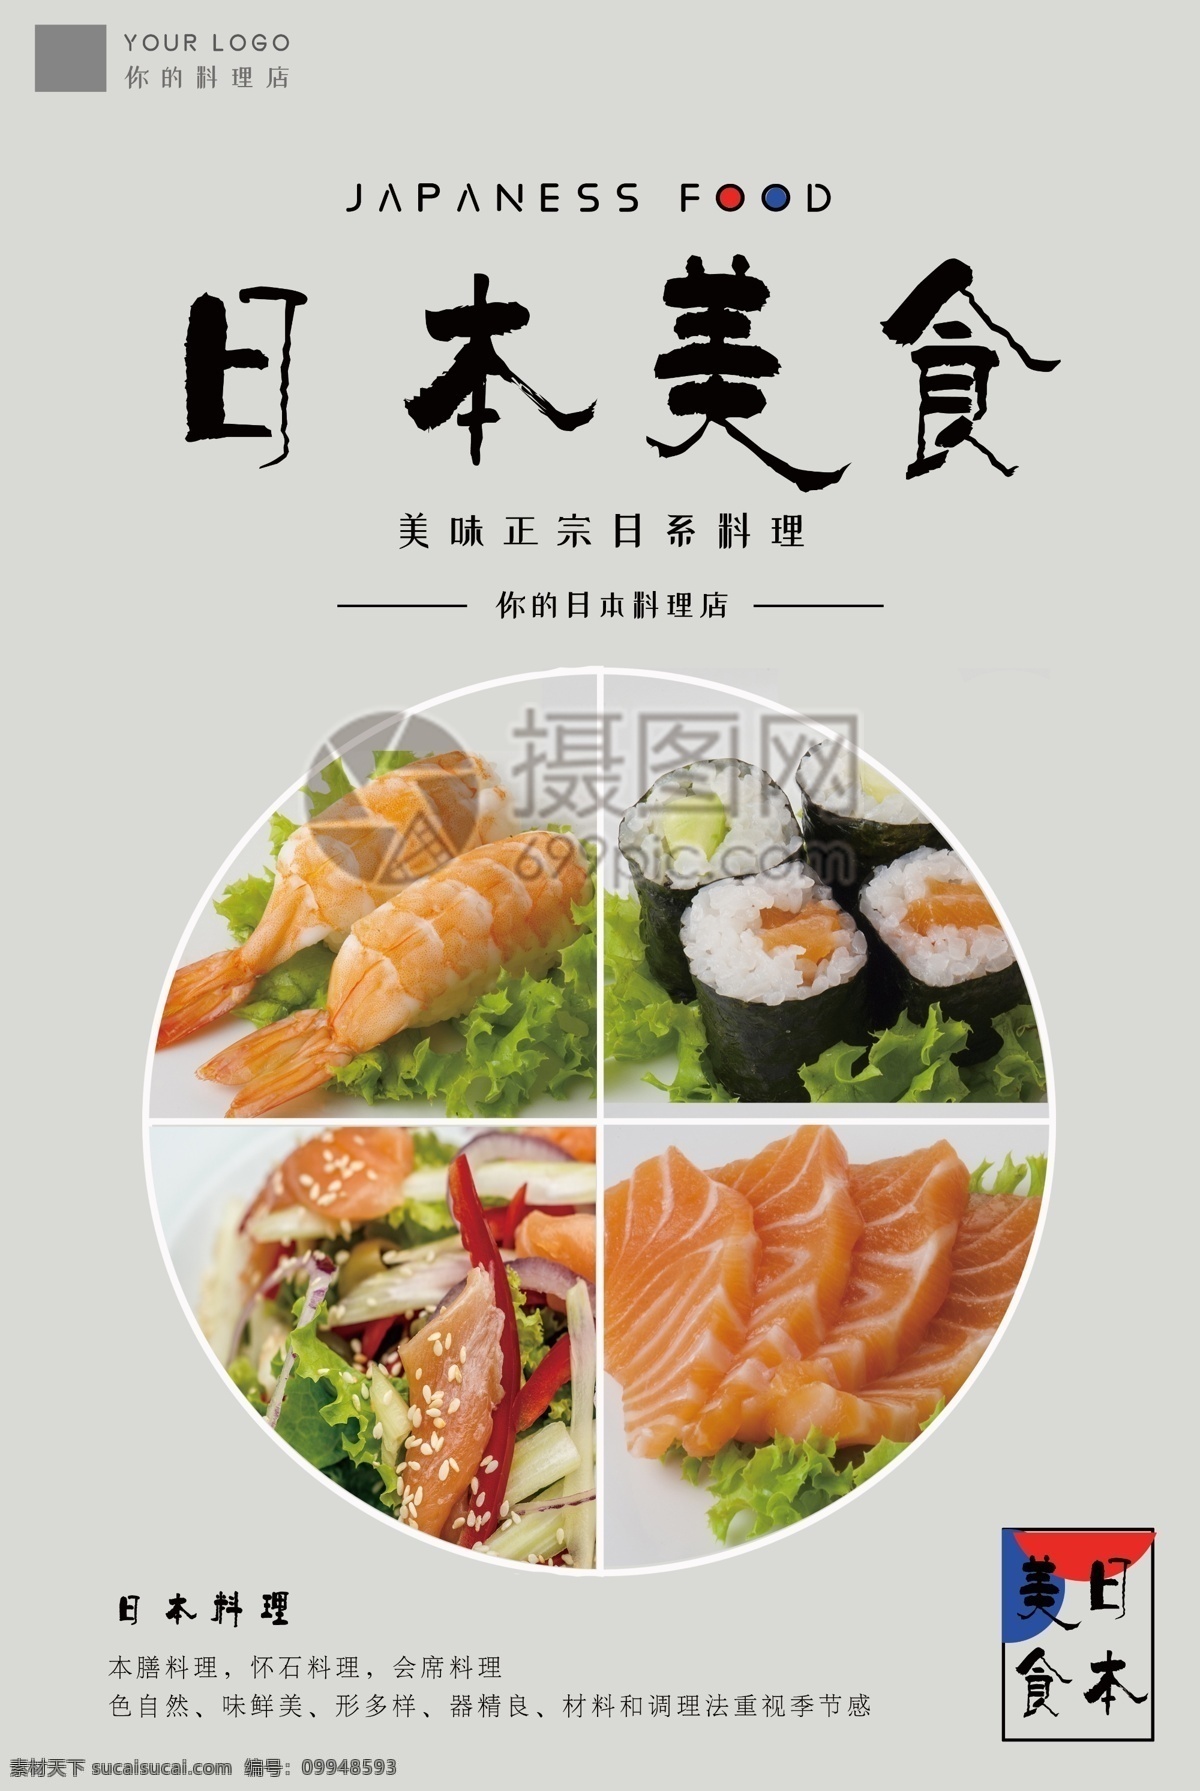 日本美食海报 日系美食 三文鱼 刺身 寿司 日本食物 清新淡雅风